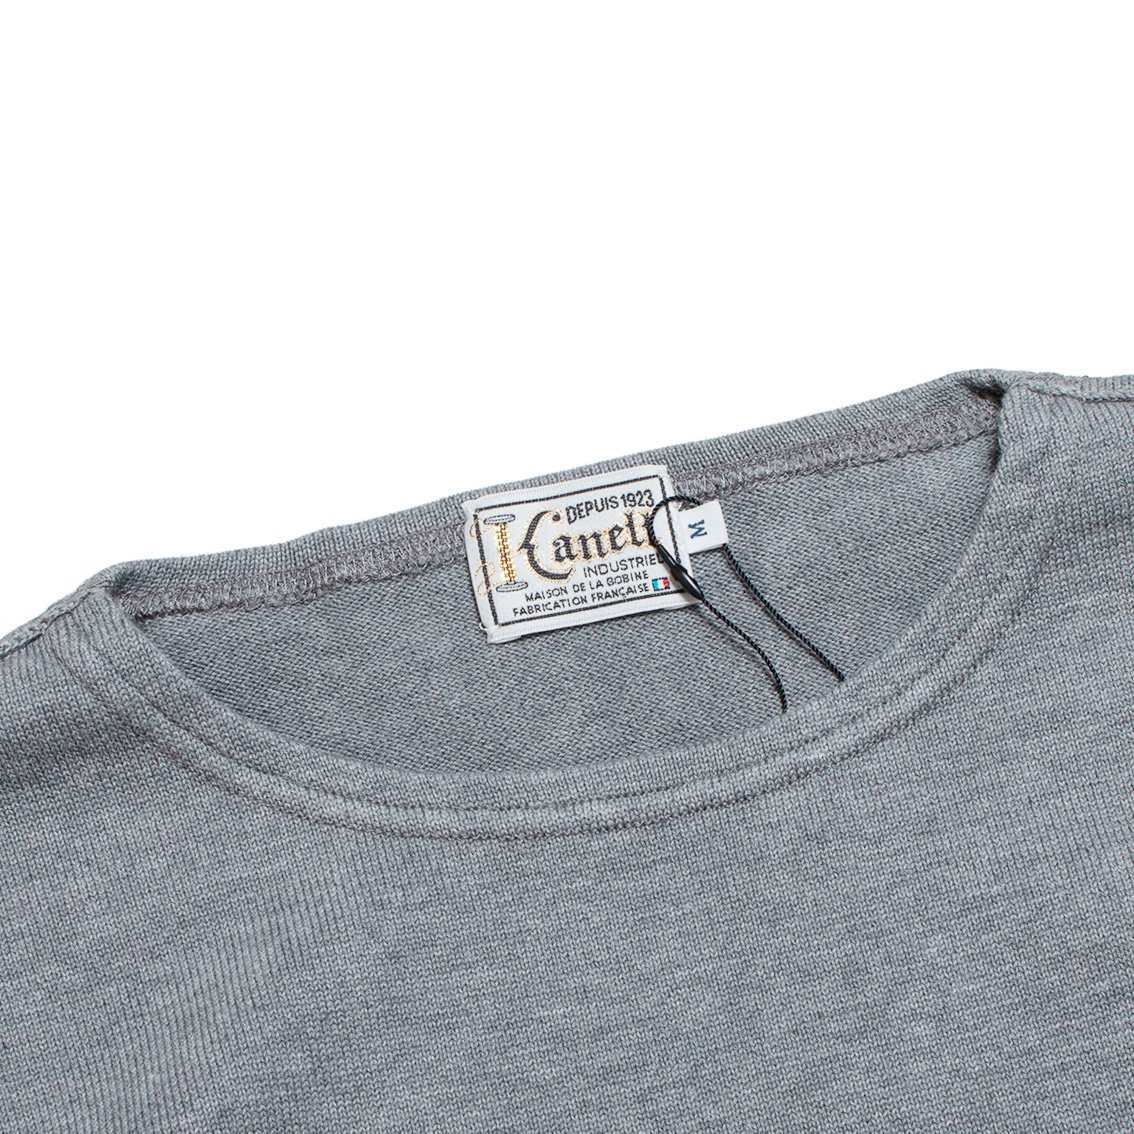 KANELL / カネル] BONAPARTE バスクシャツ ソリッドカラー ボナパルト